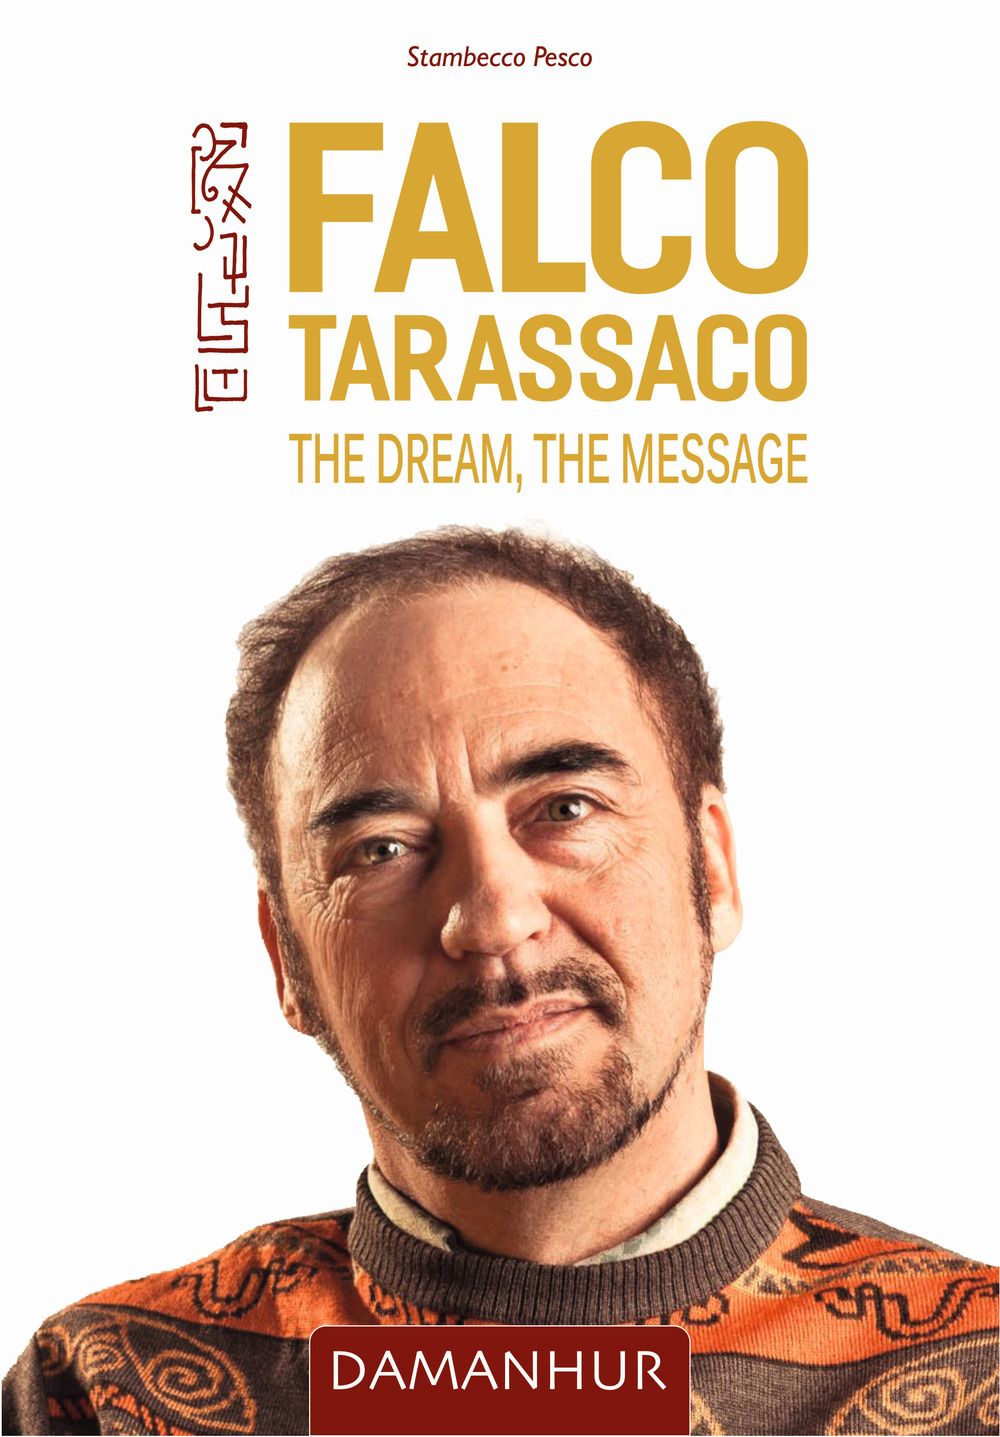 Libri Pesco Stambecco - Falco Tarassaco. The Dream, The Message NUOVO SIGILLATO, EDIZIONE DEL 03/05/2021 SUBITO DISPONIBILE